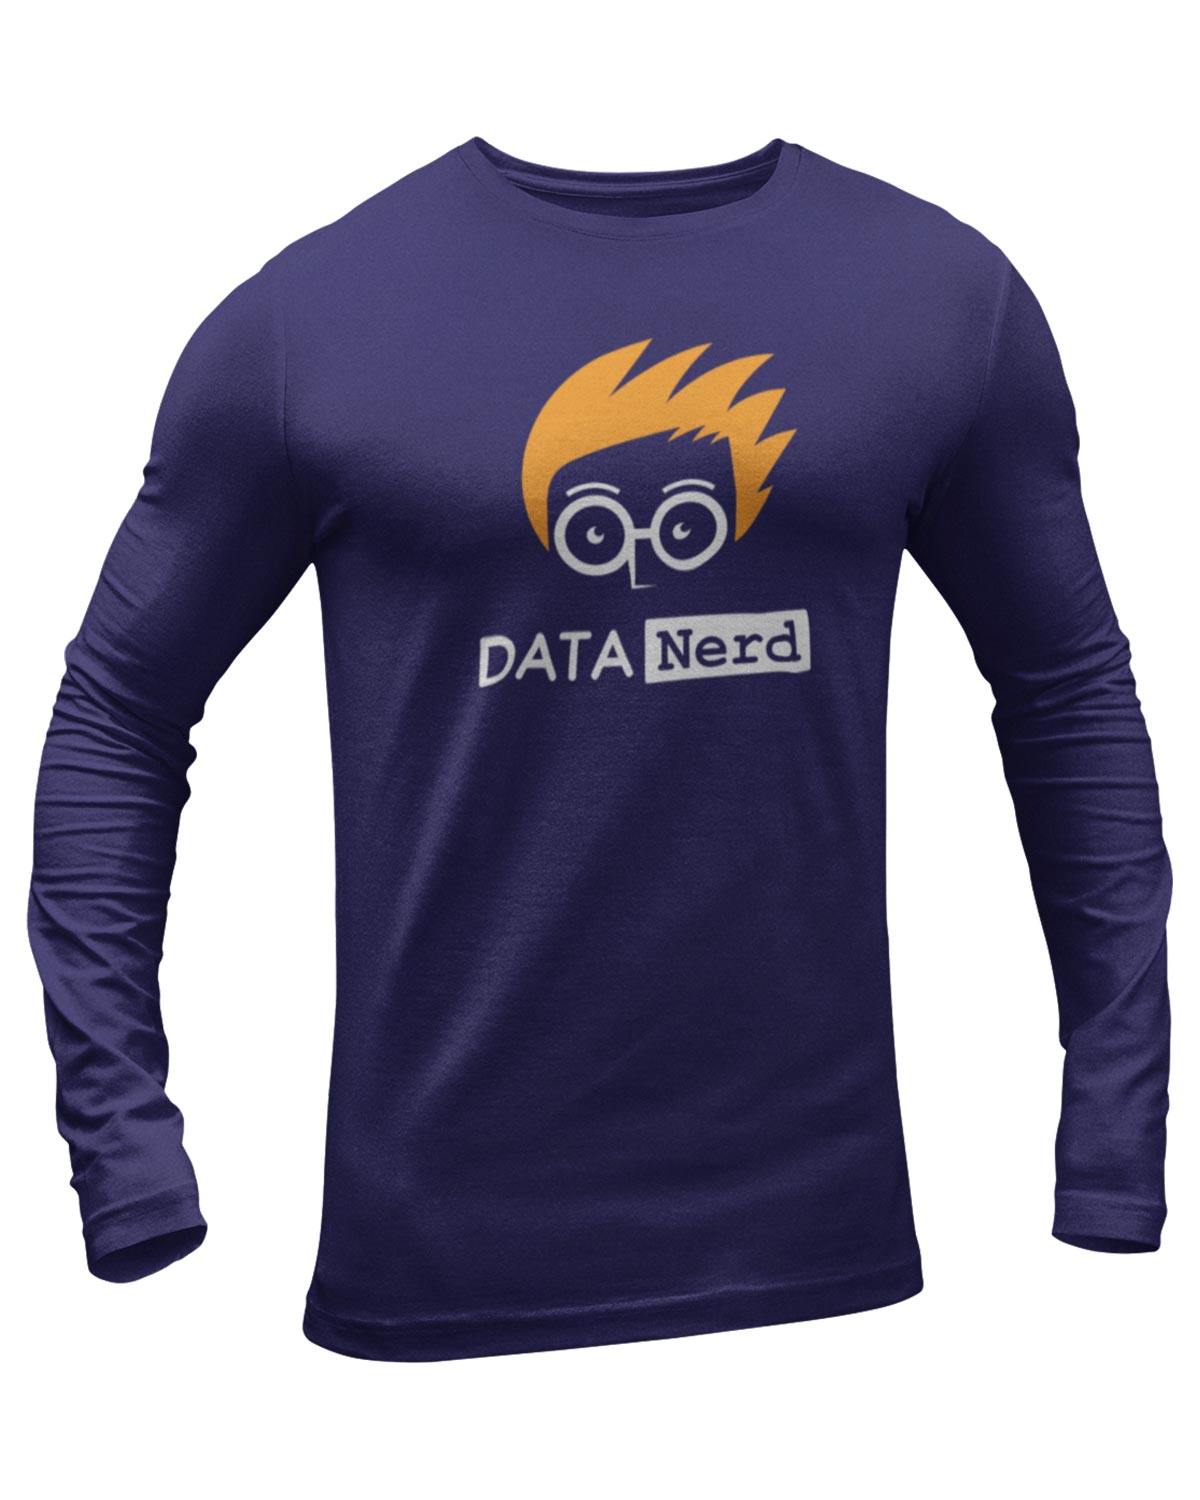 Date Nerd Full Sleeve Geek T-Shirt